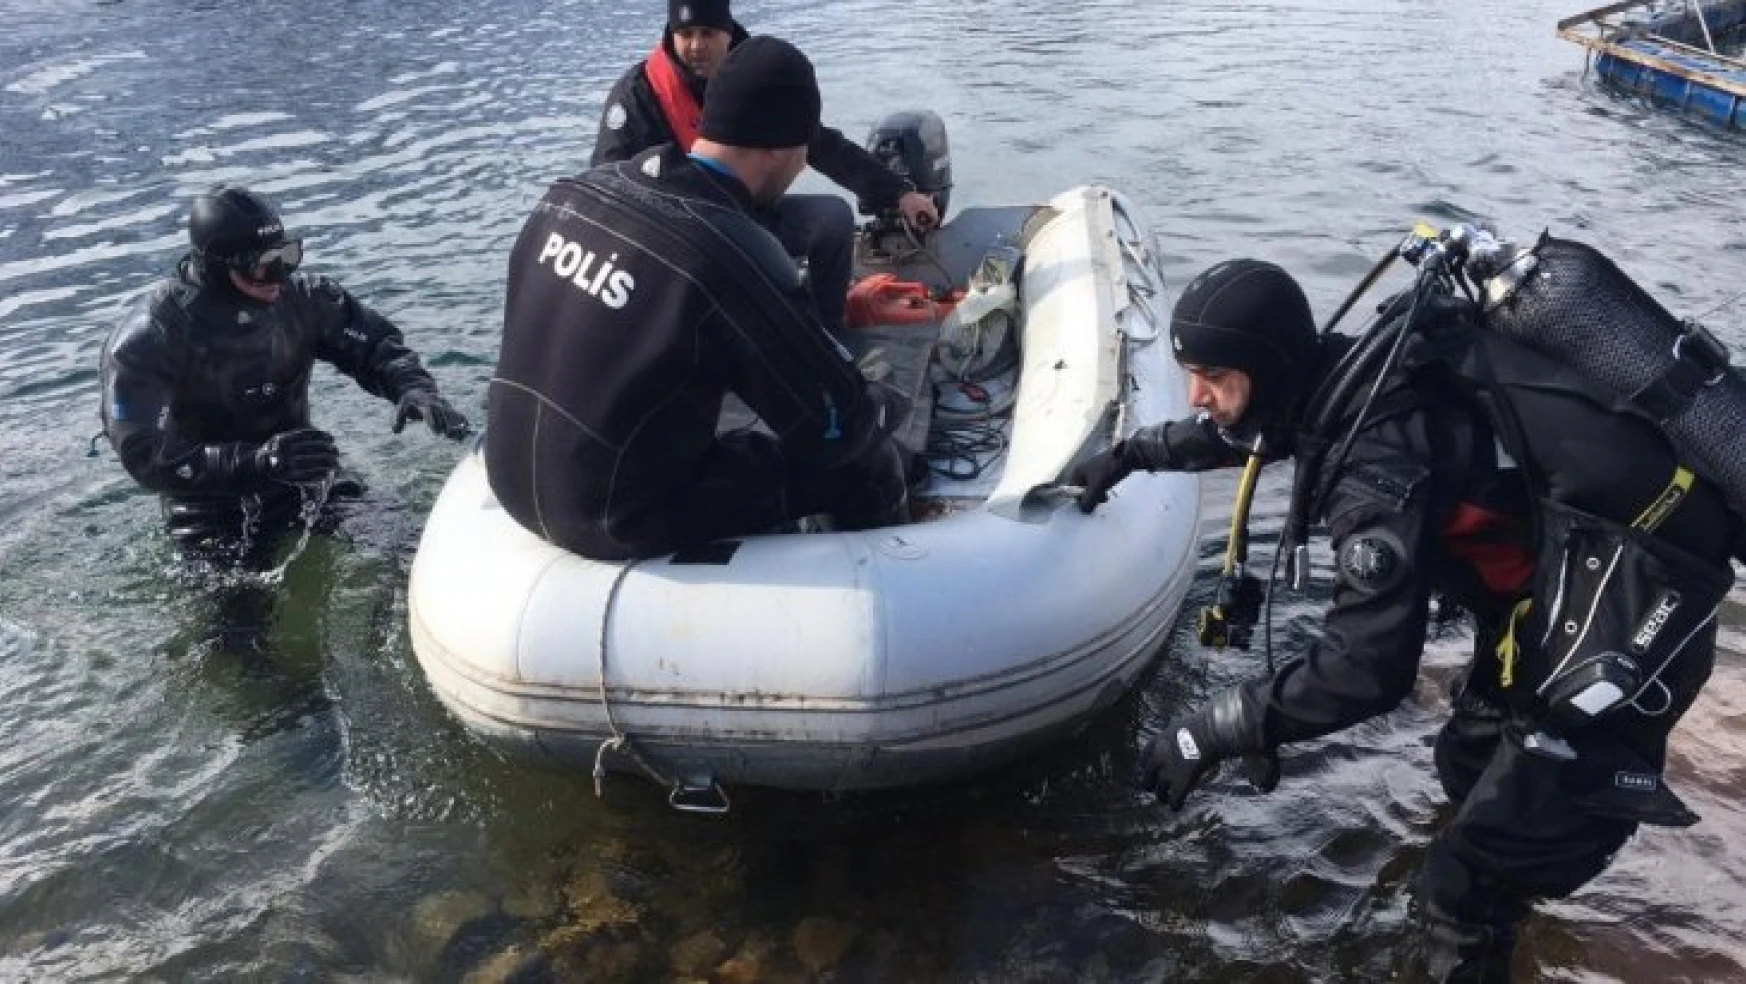 Batan teknede kaybolan şahsın cansız bedenine ulaşıldı